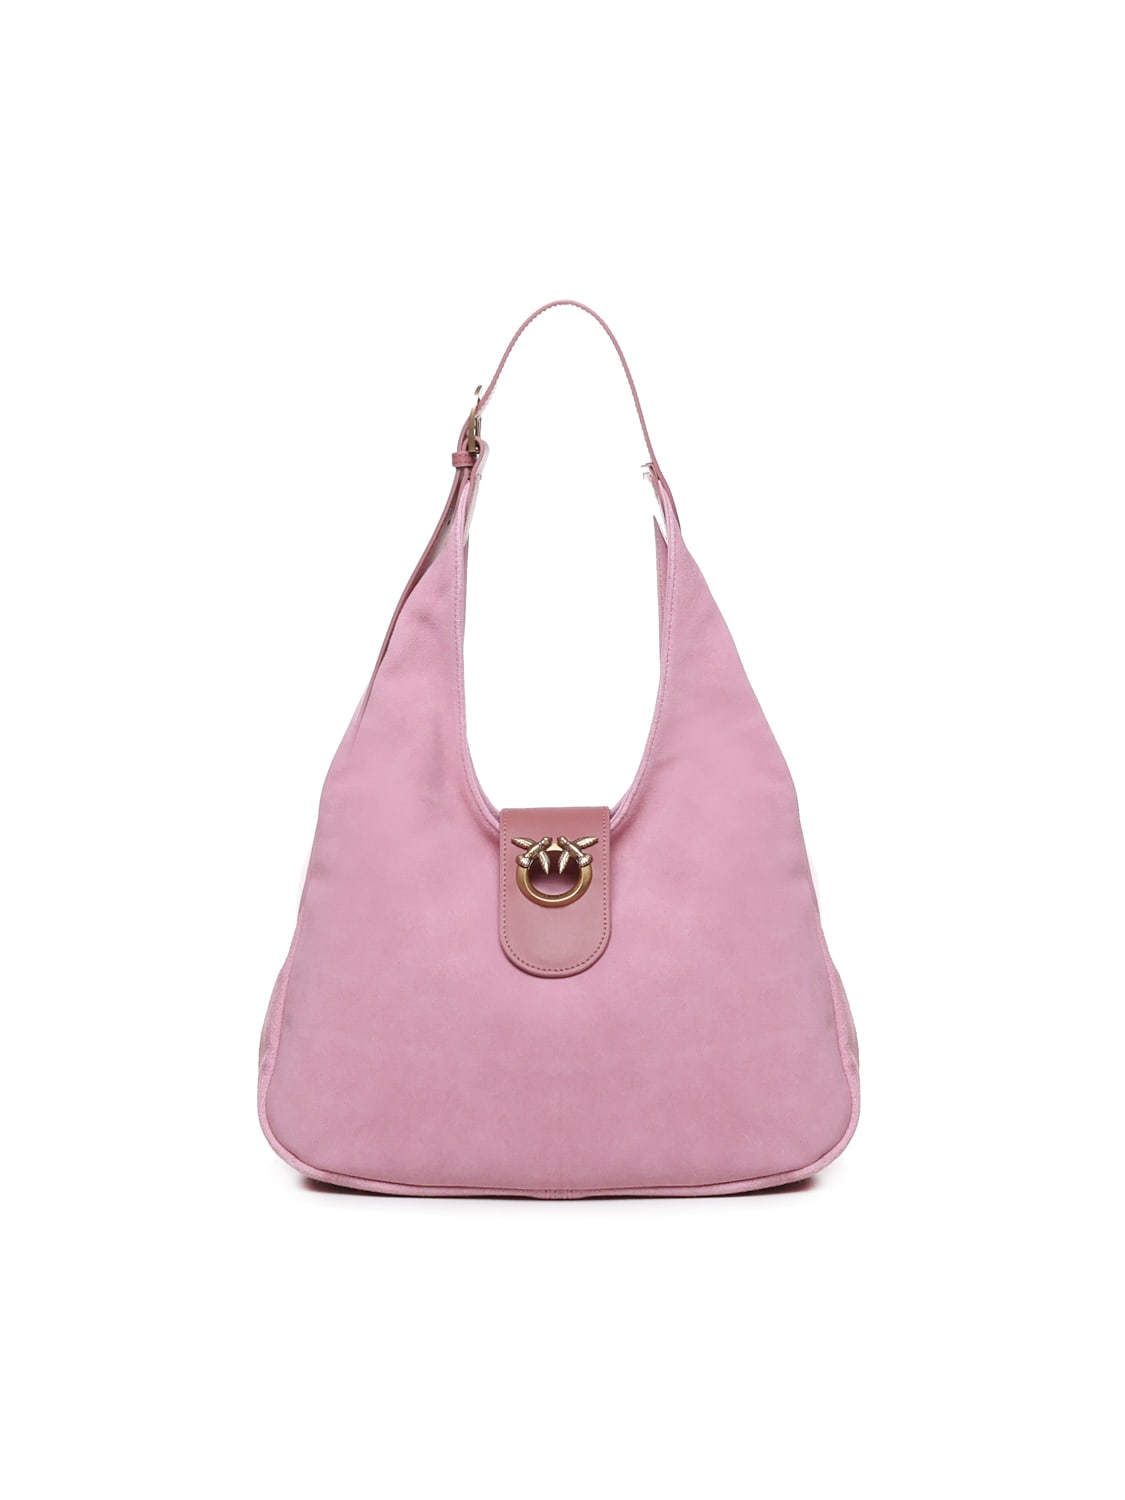 Pinko Shoulder Bag With Love Birds Plaque In Pink